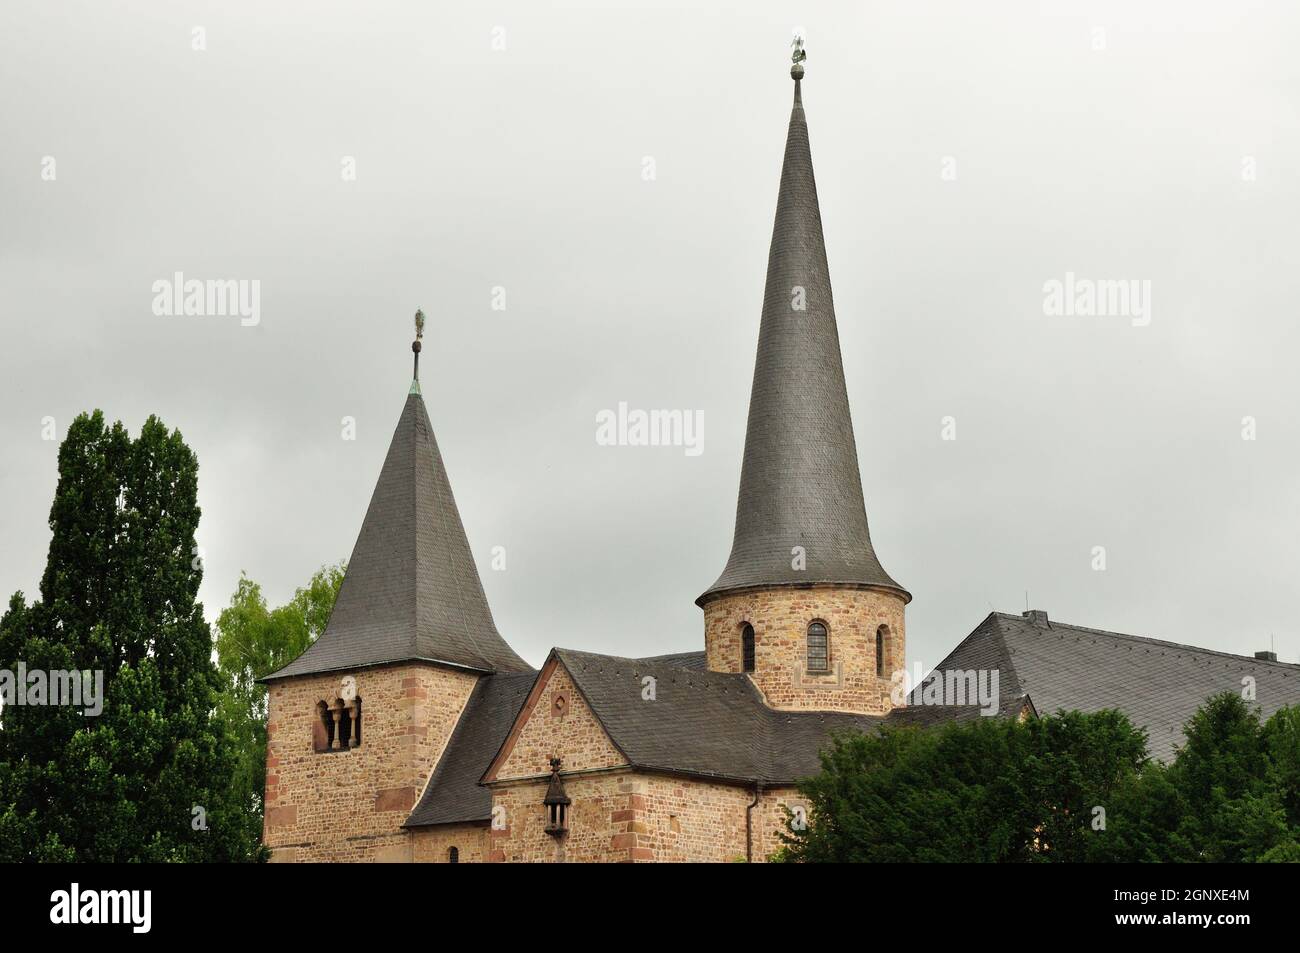 Die im vorromanischen um 820 Baustil errichtete Michalelskirche in Fulda direkt neben dem dom stellt ein beeindruckendes Monument mittelalterlicher Ba Foto de stock